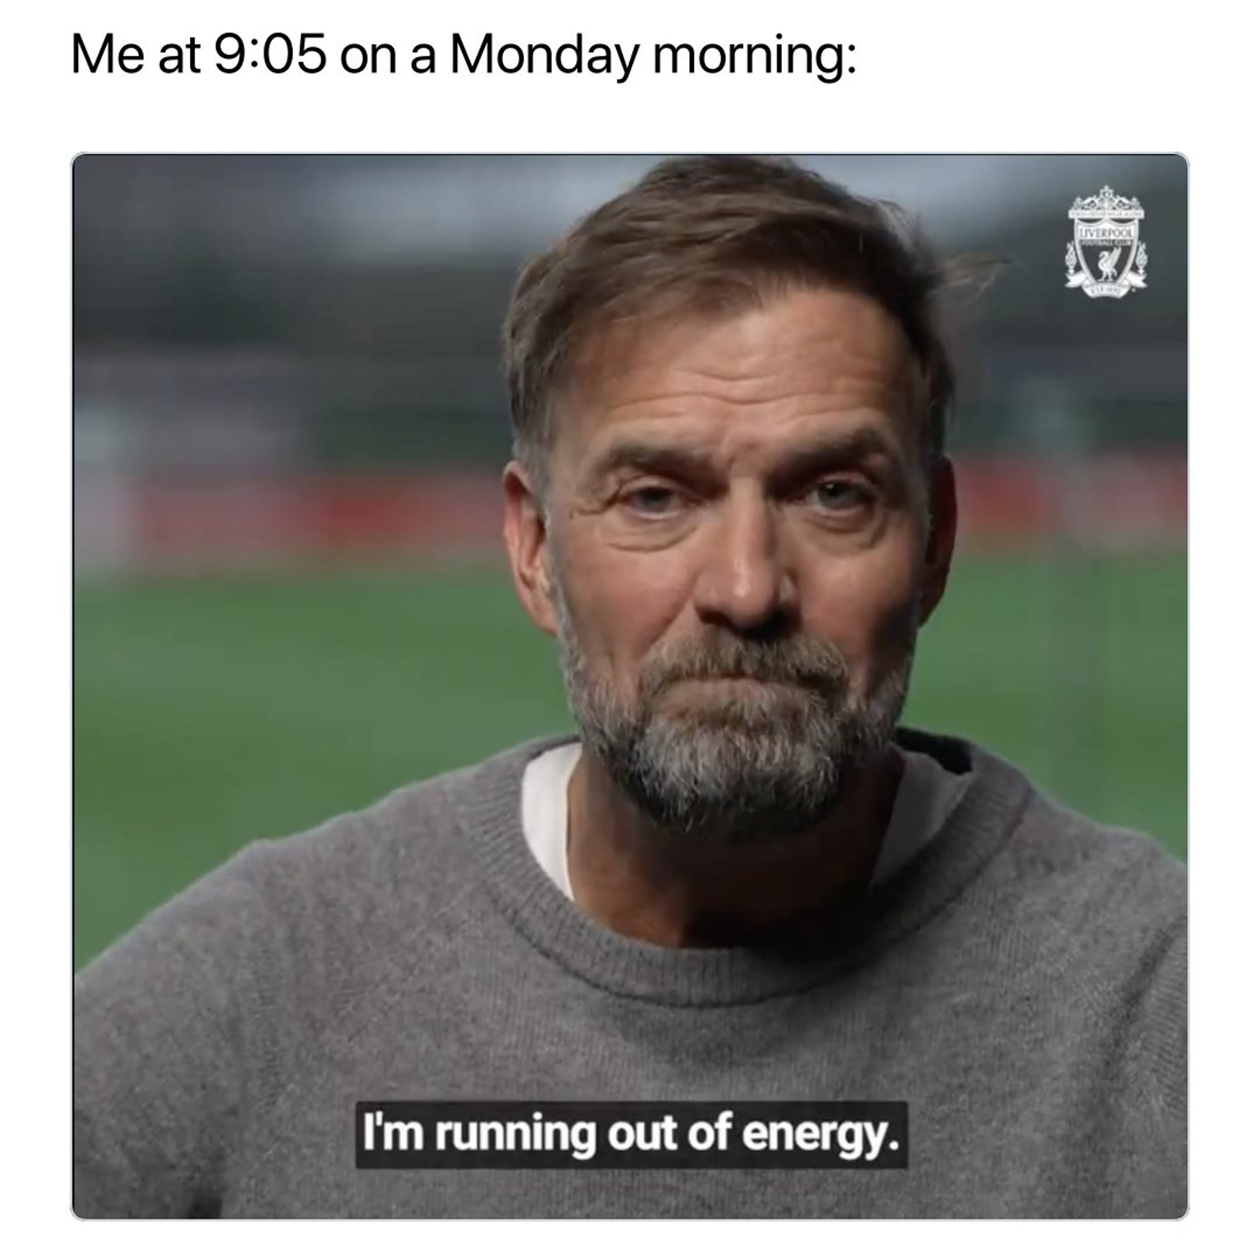 Перевод: «Я в 9:05 утром понедельника: „У меня заканчивается энергия“»